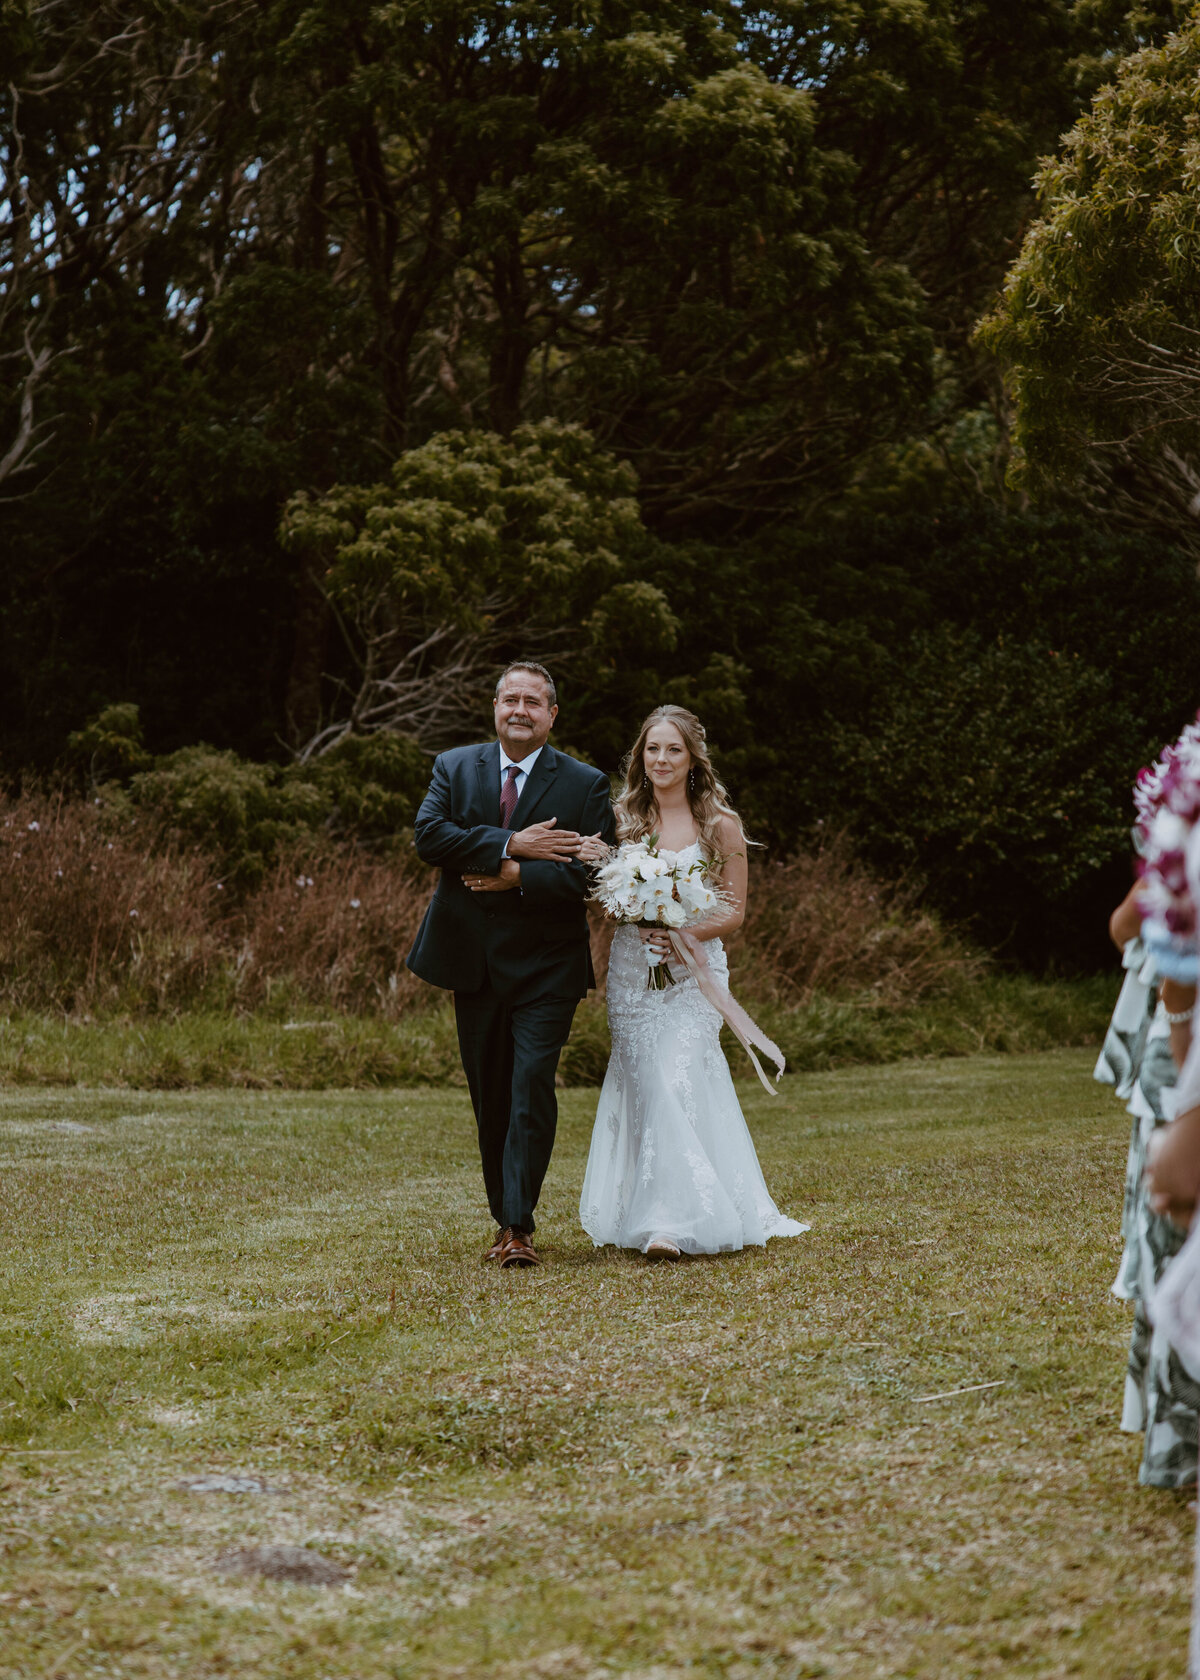 Nicole and Ethan get married at Waimea Canyon, Kauai.